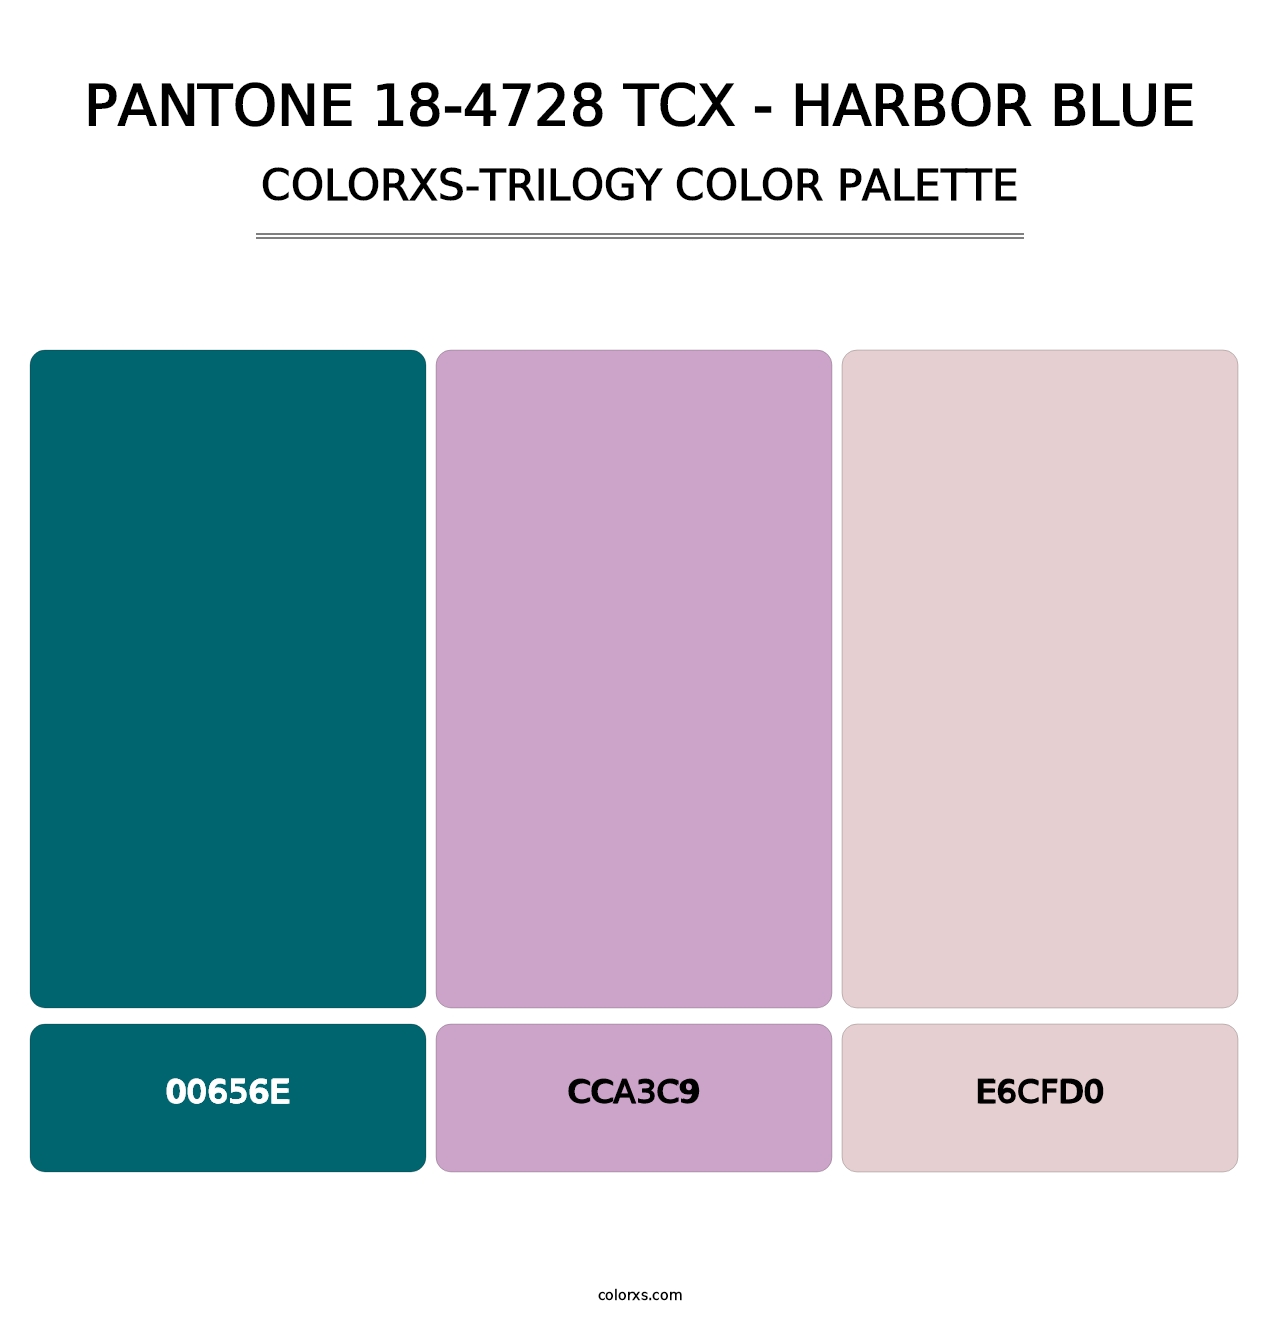 PANTONE 18-4728 TCX - Harbor Blue - Colorxs Trilogy Palette